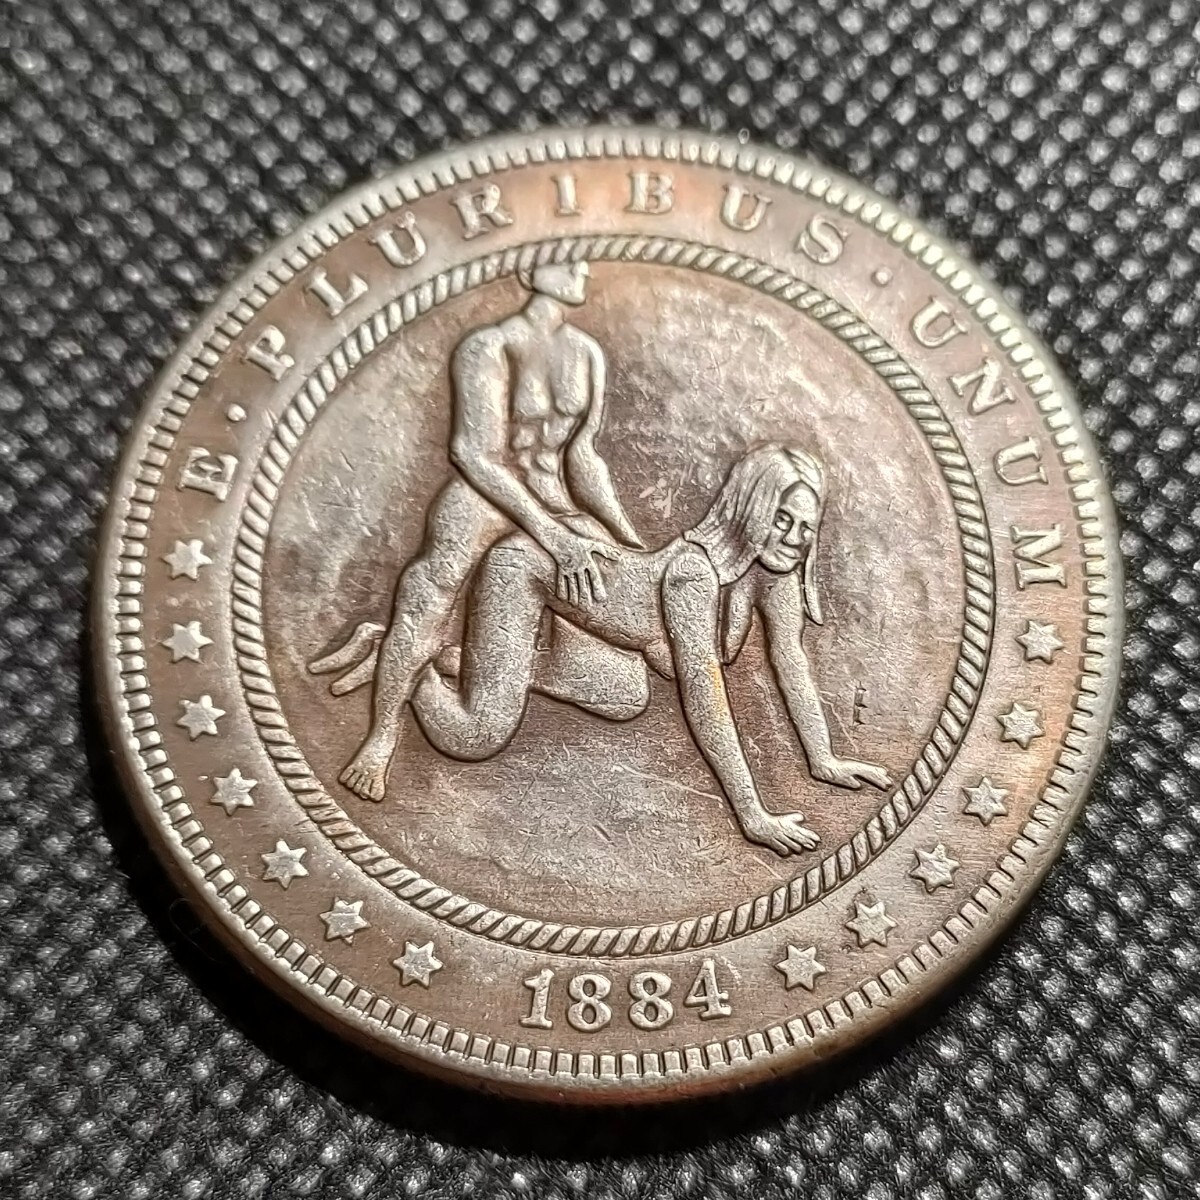 6558 アメリカ古銭 ルンペン 約38mm イーグル チャレンジコイン ゴルフマーカー コイン アンティーク ホーボーの画像1